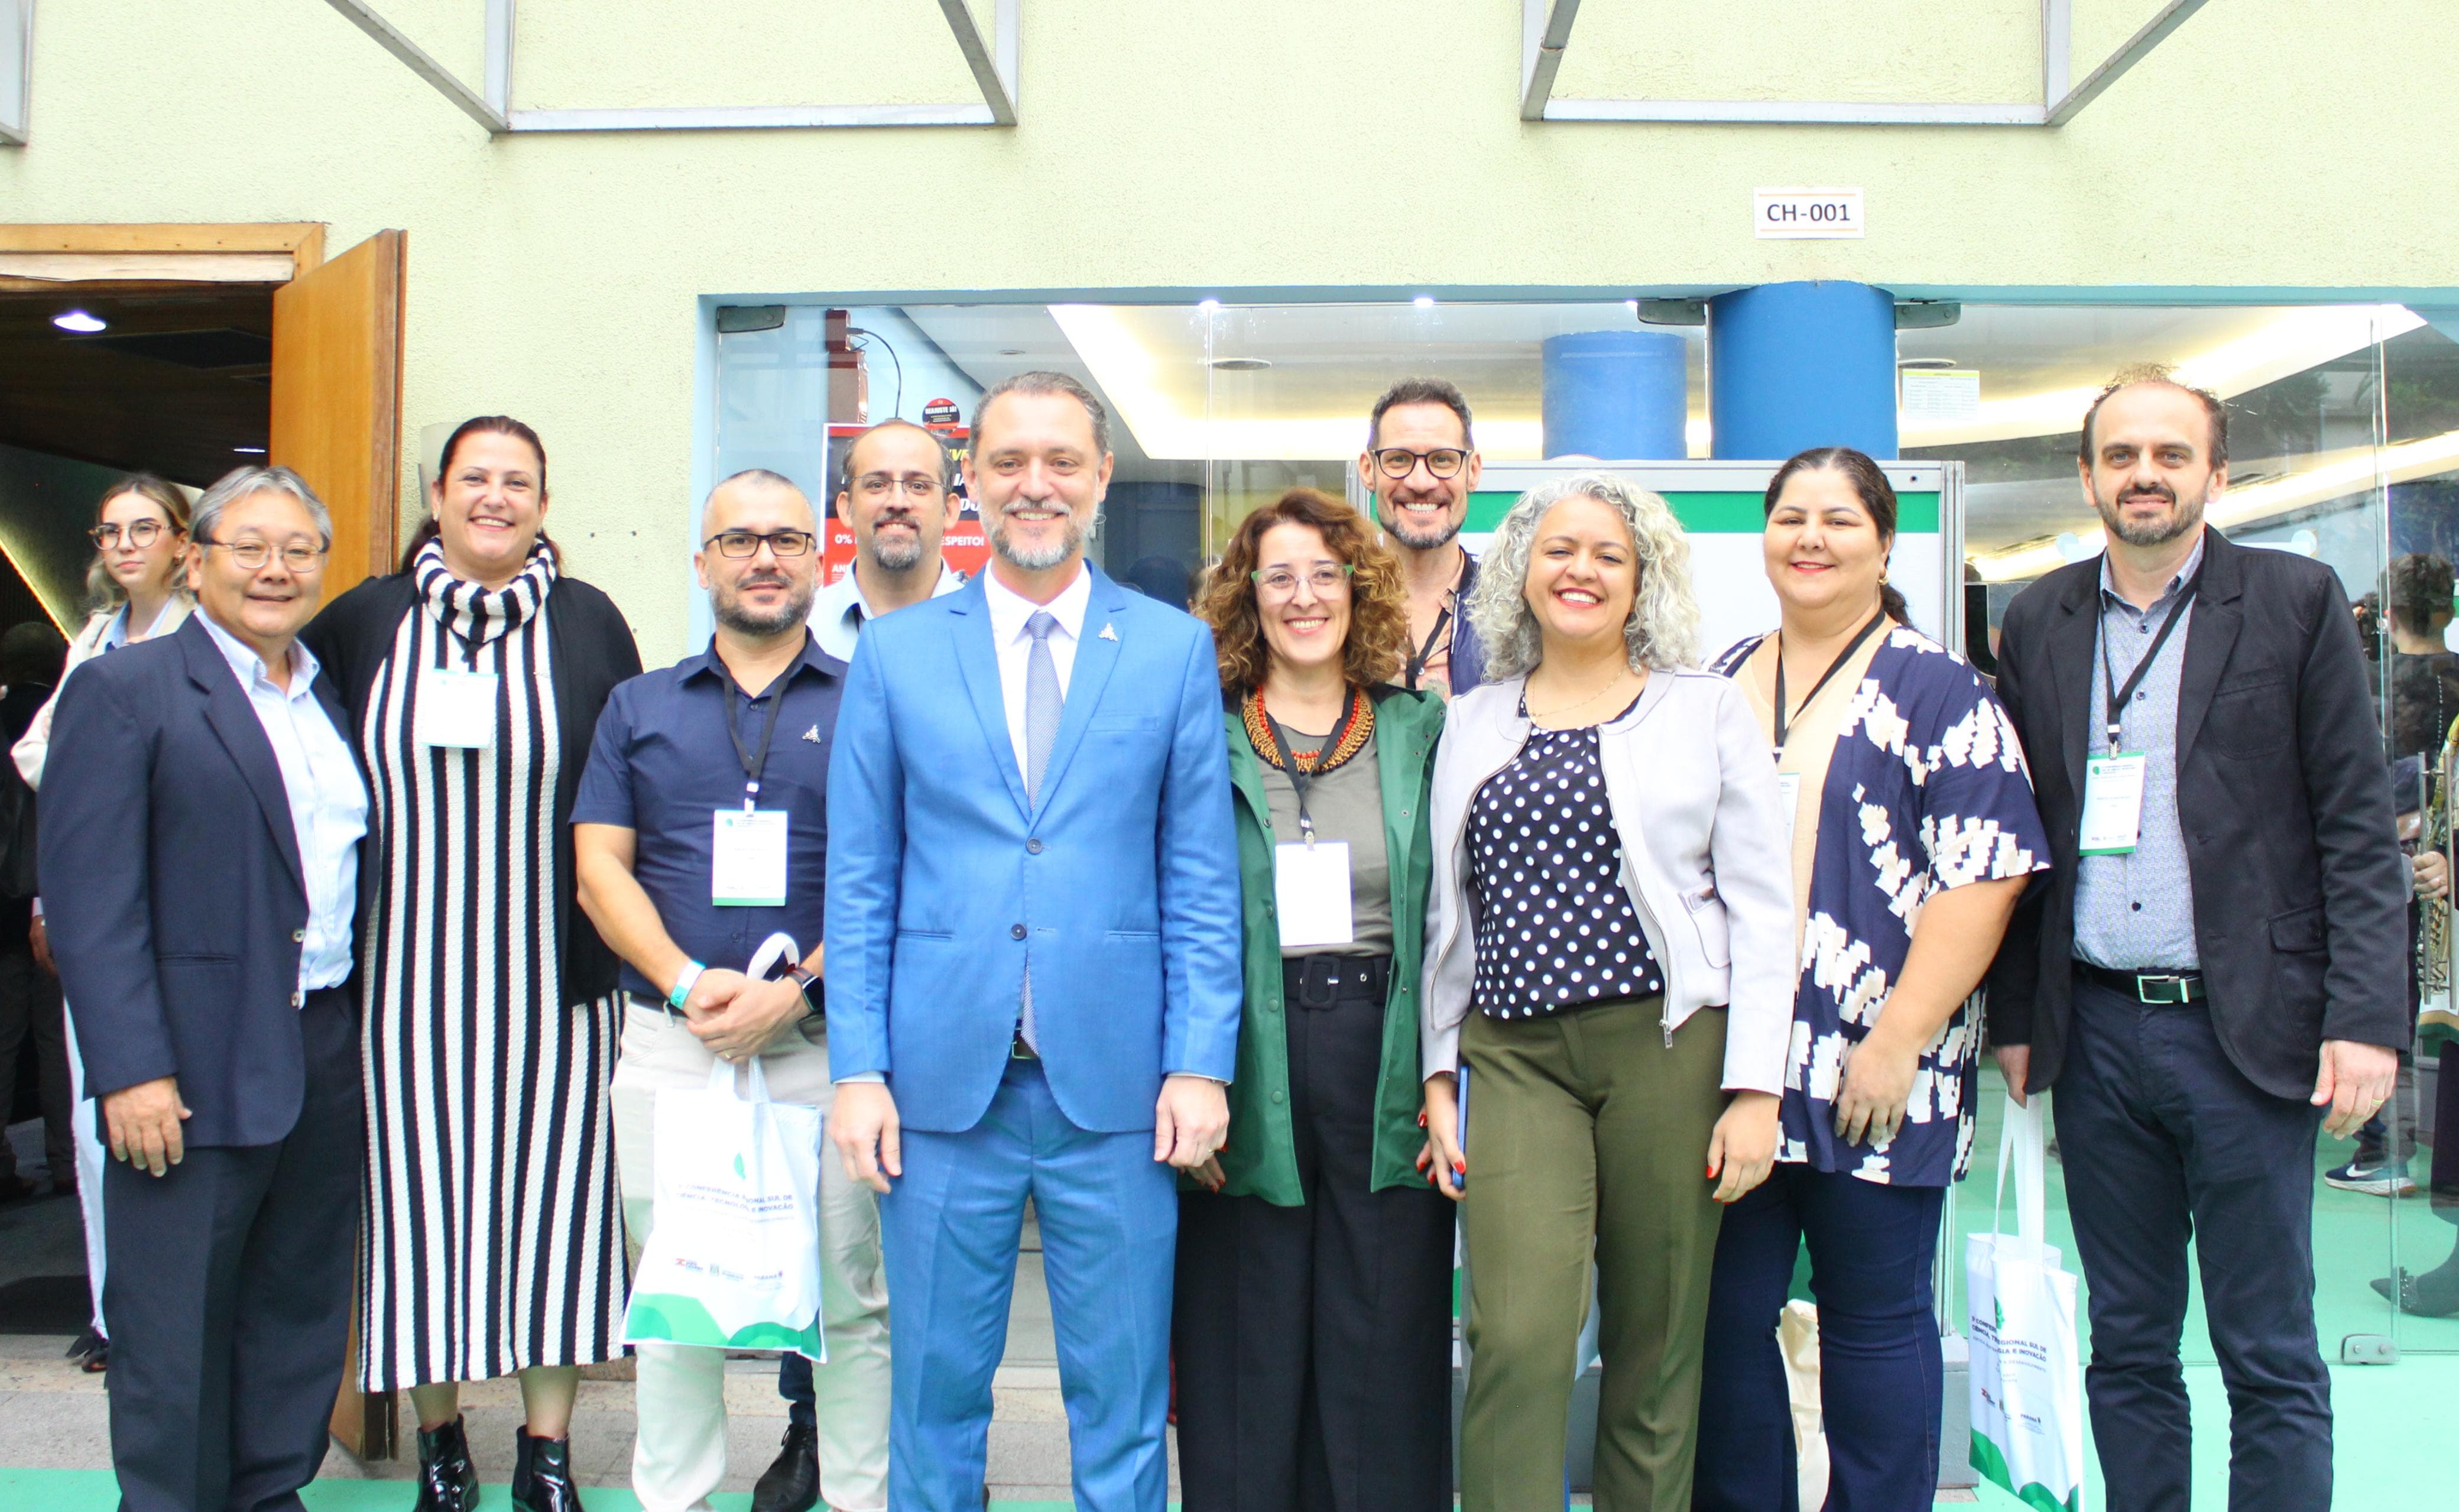 411 pessoas do PR, SC e RS se inscreveram na Conferência Regional, em Curitiba; UEM levou 14 representantes